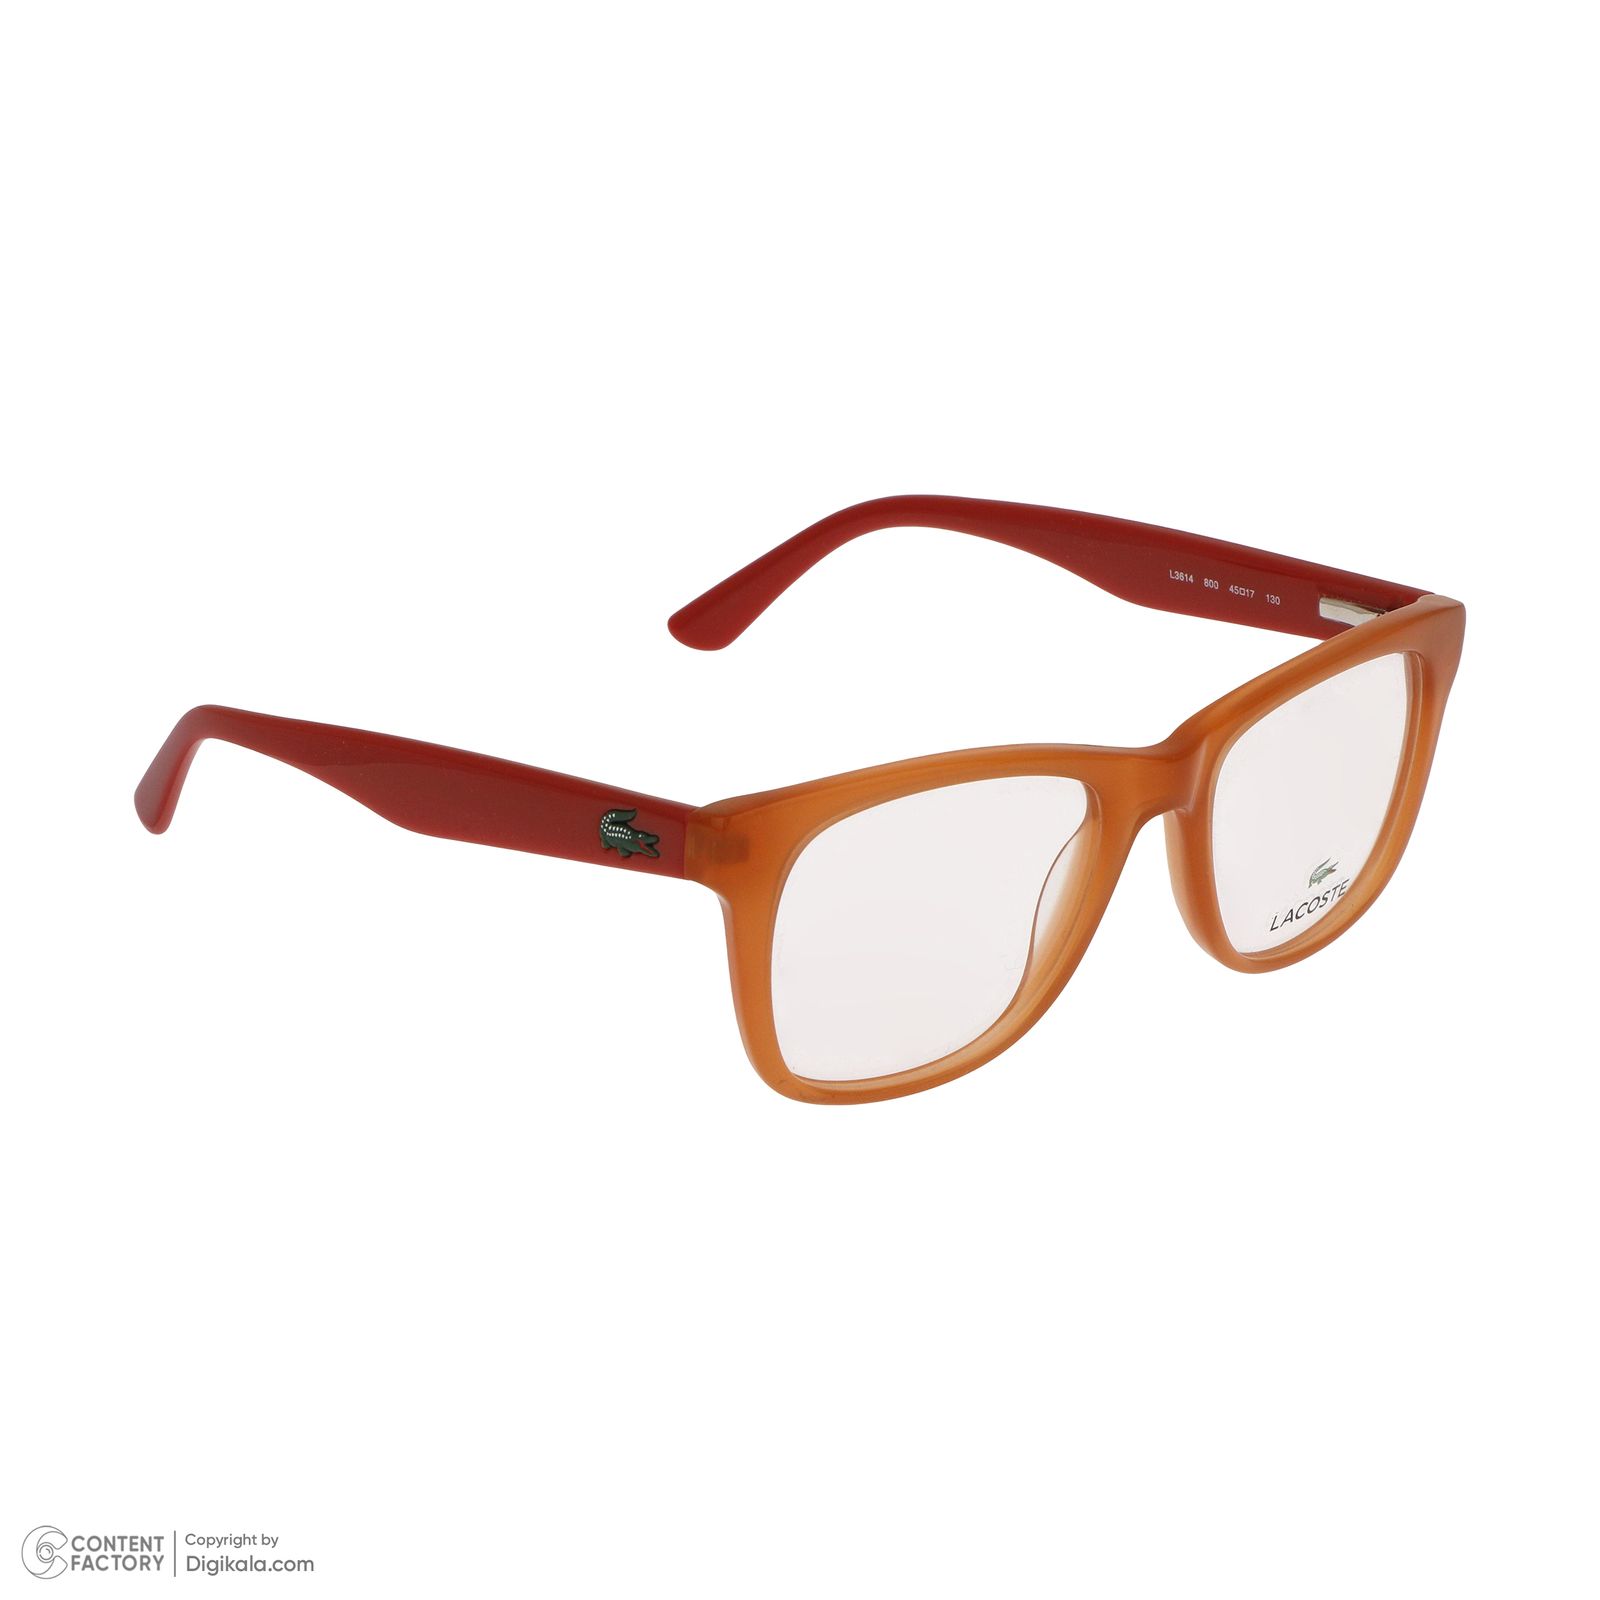 فریم عینک طبی زنانه لاگوست مدل 3614-800 -  - 4